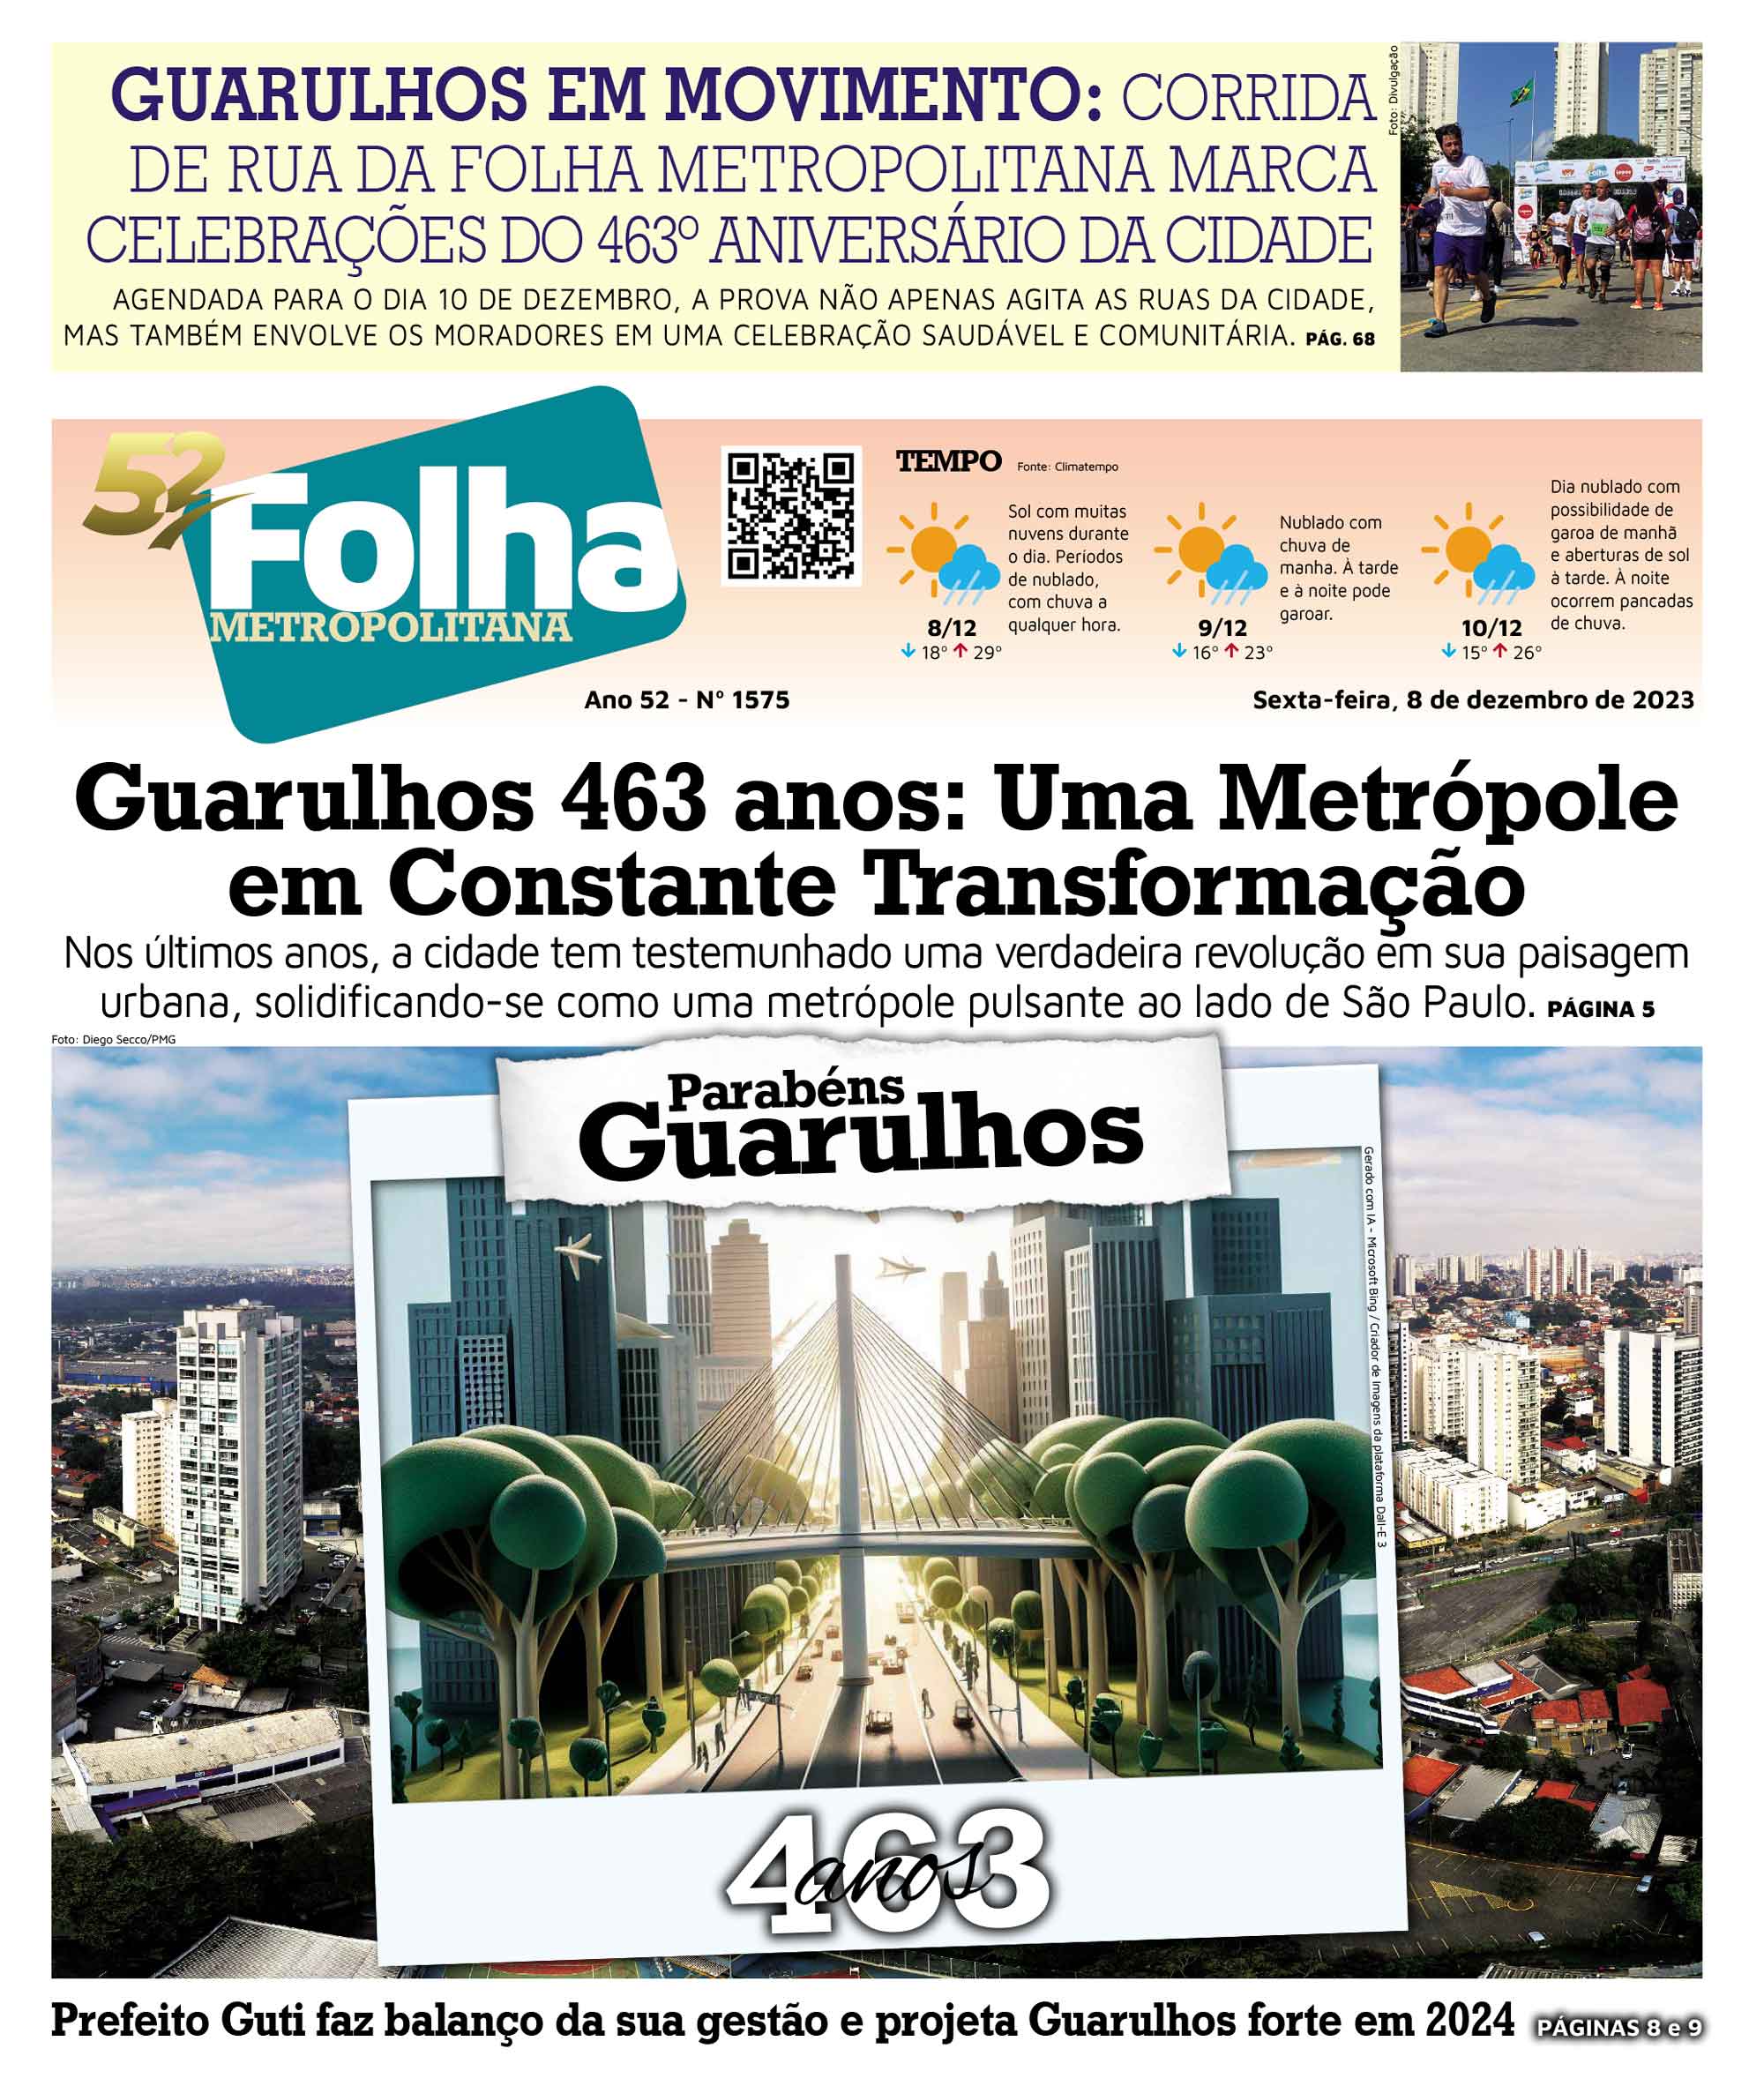 Prefeitura de Guarulhos - Começa hoje (23) a 12ª Semana da Mulher